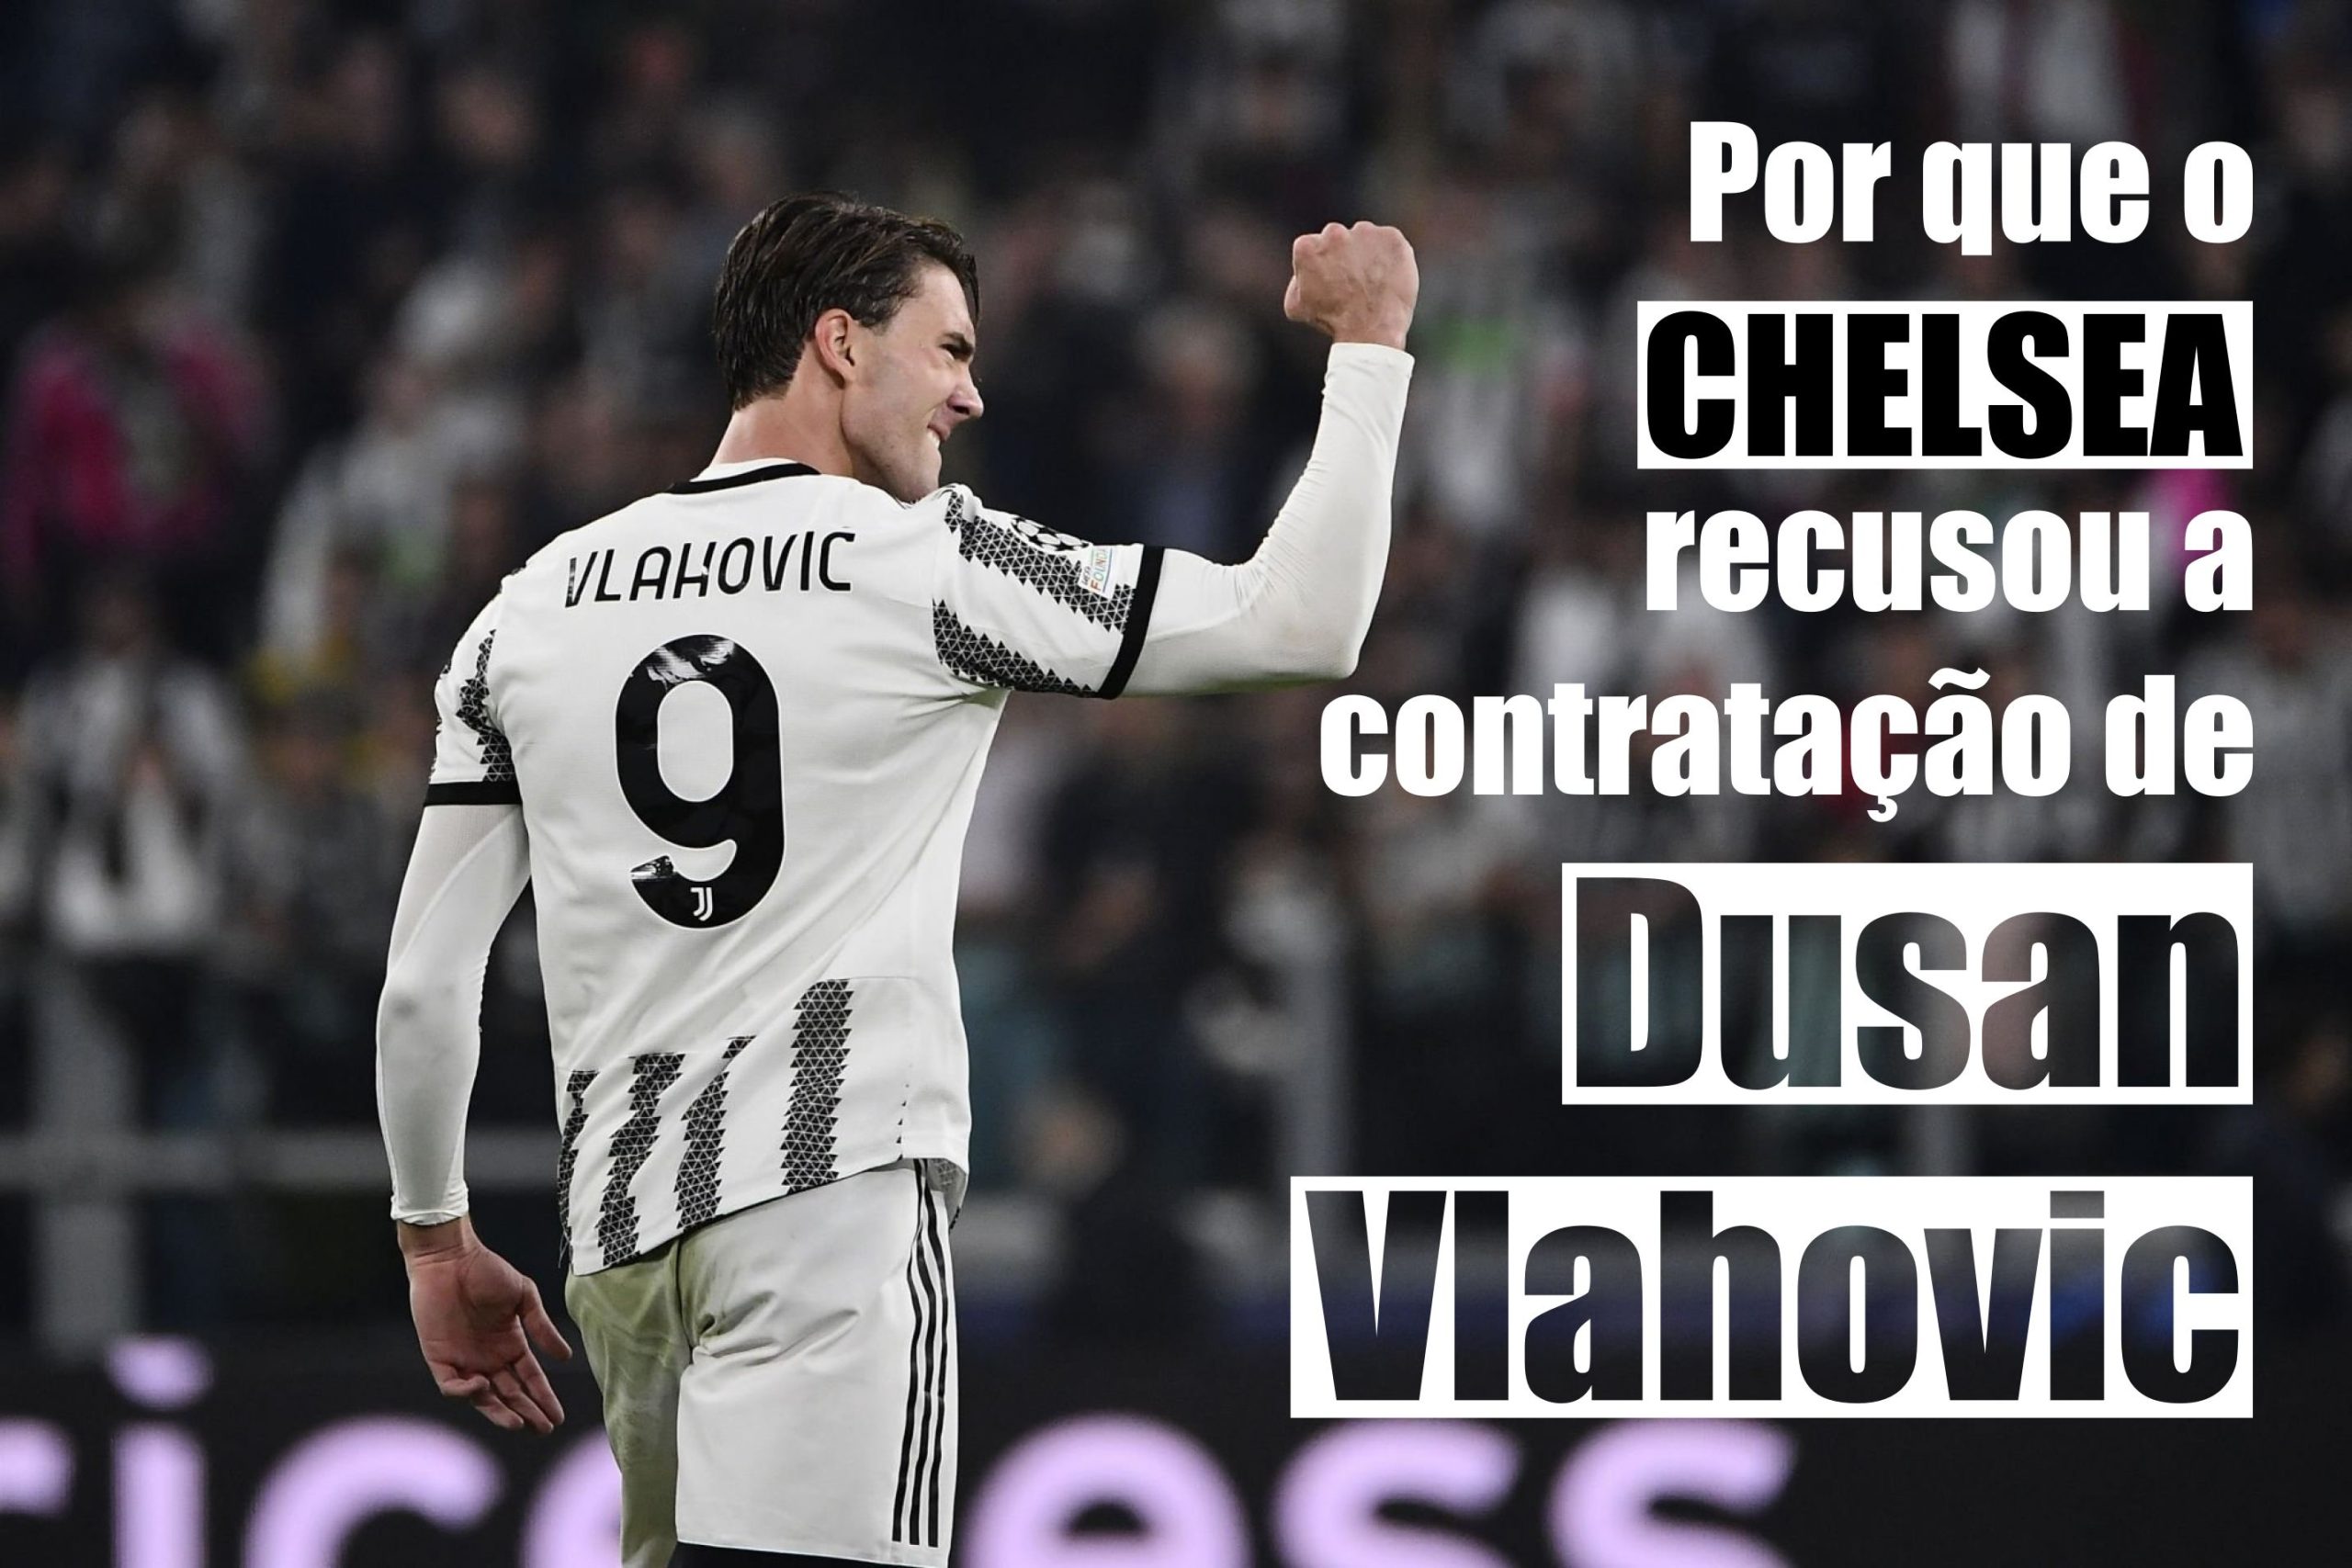 Por que o Chelsea recusou a contratação de Dusan Vlahovic?